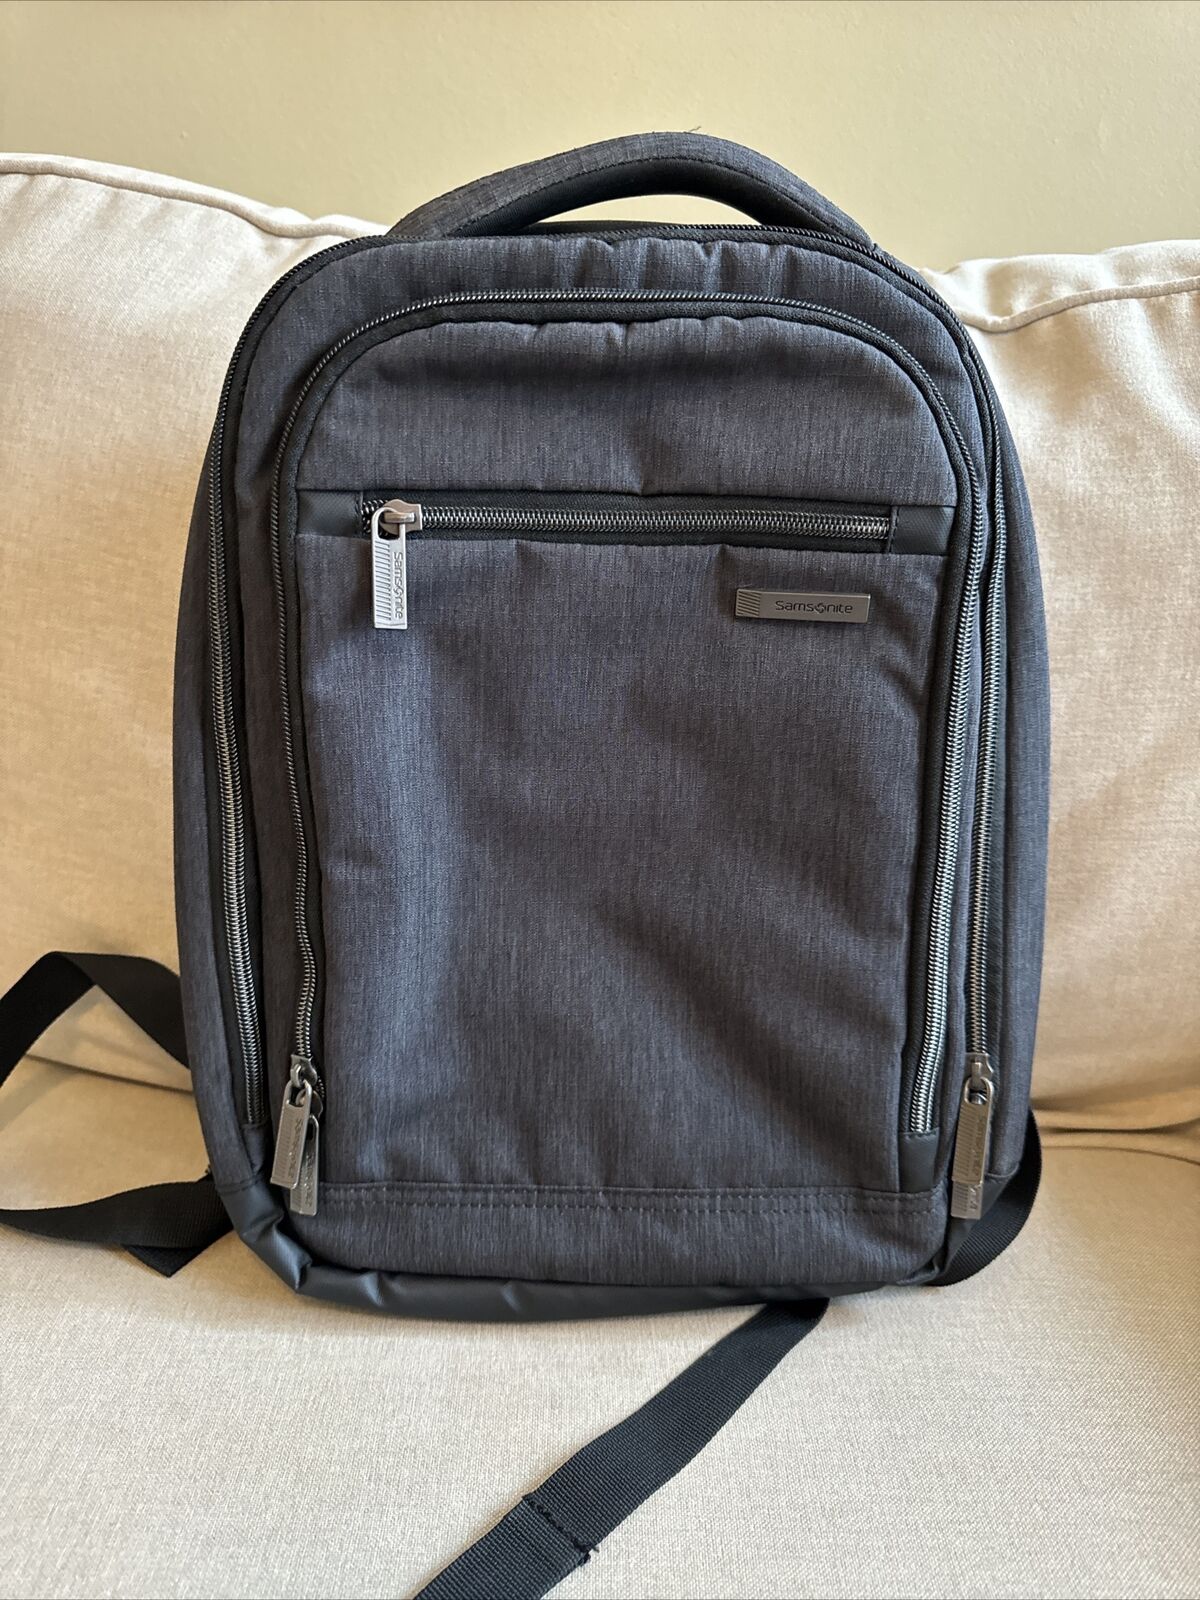 Samsonite Modern Utility Small Backpack (Charcoal Heather/Charcoal)